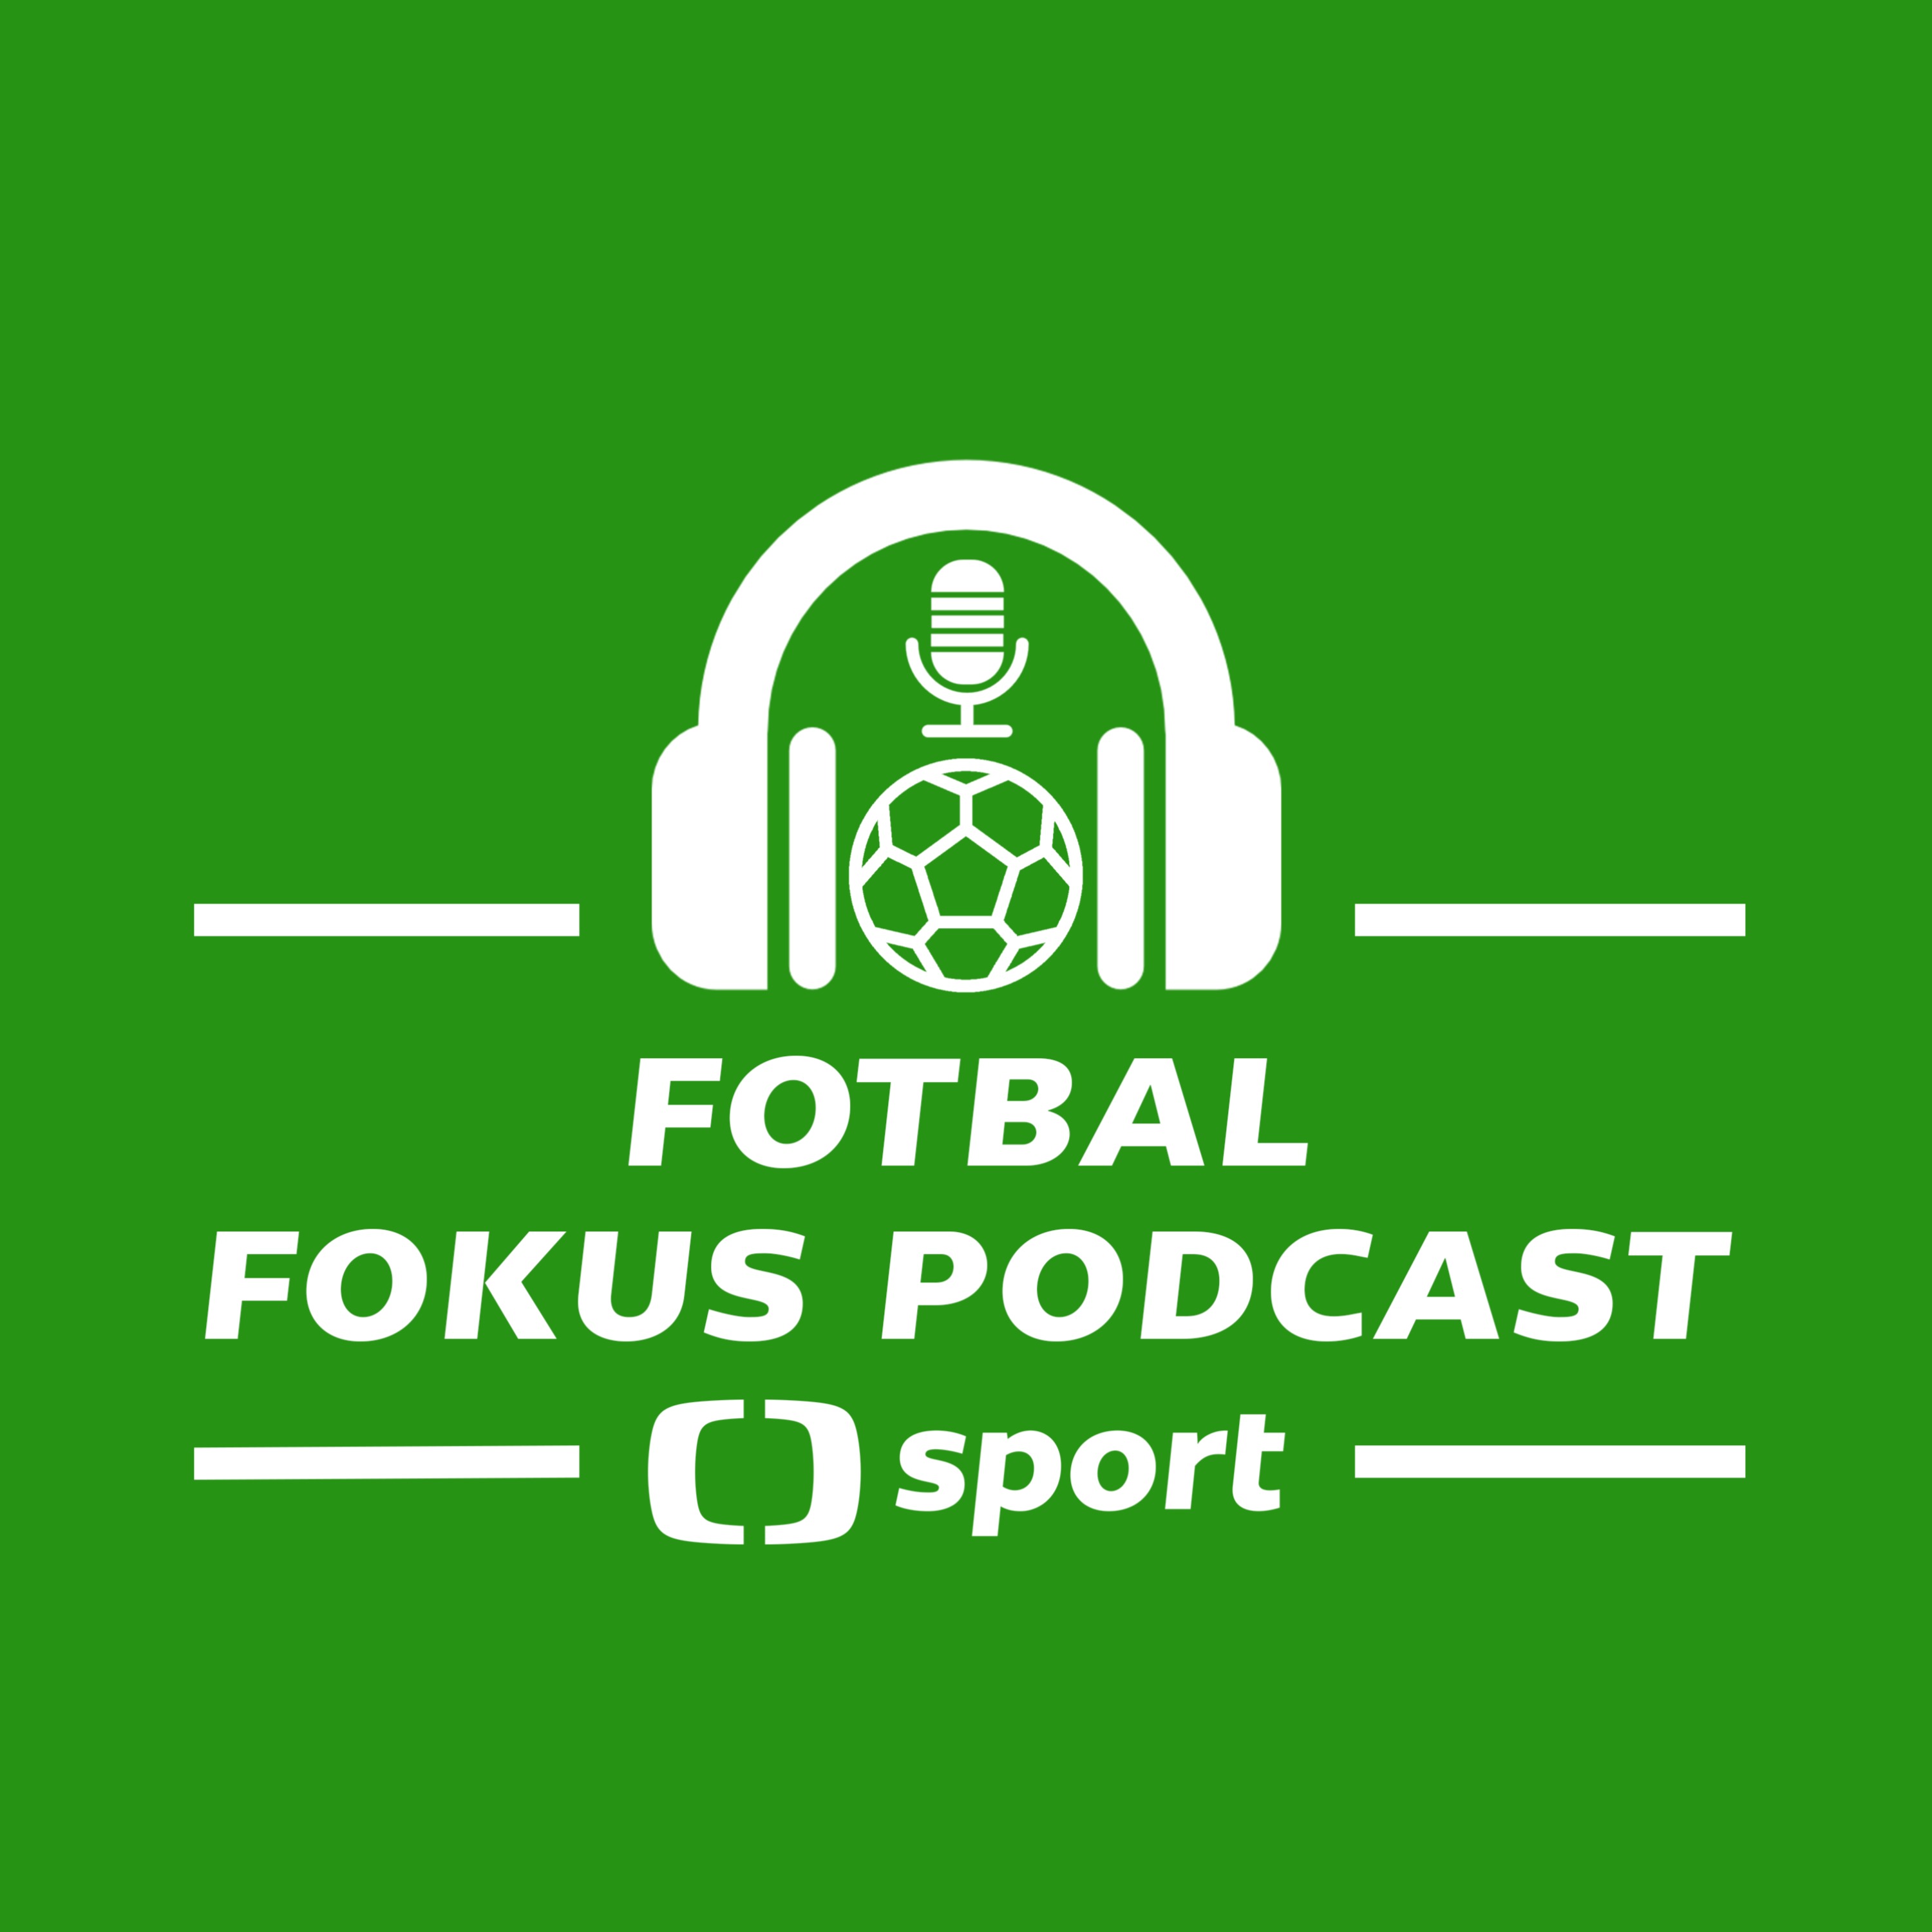 Fotbal fokus podcast: Vytěží Slavia ze Stancia někdy maximum a proč to Plzni drhne?